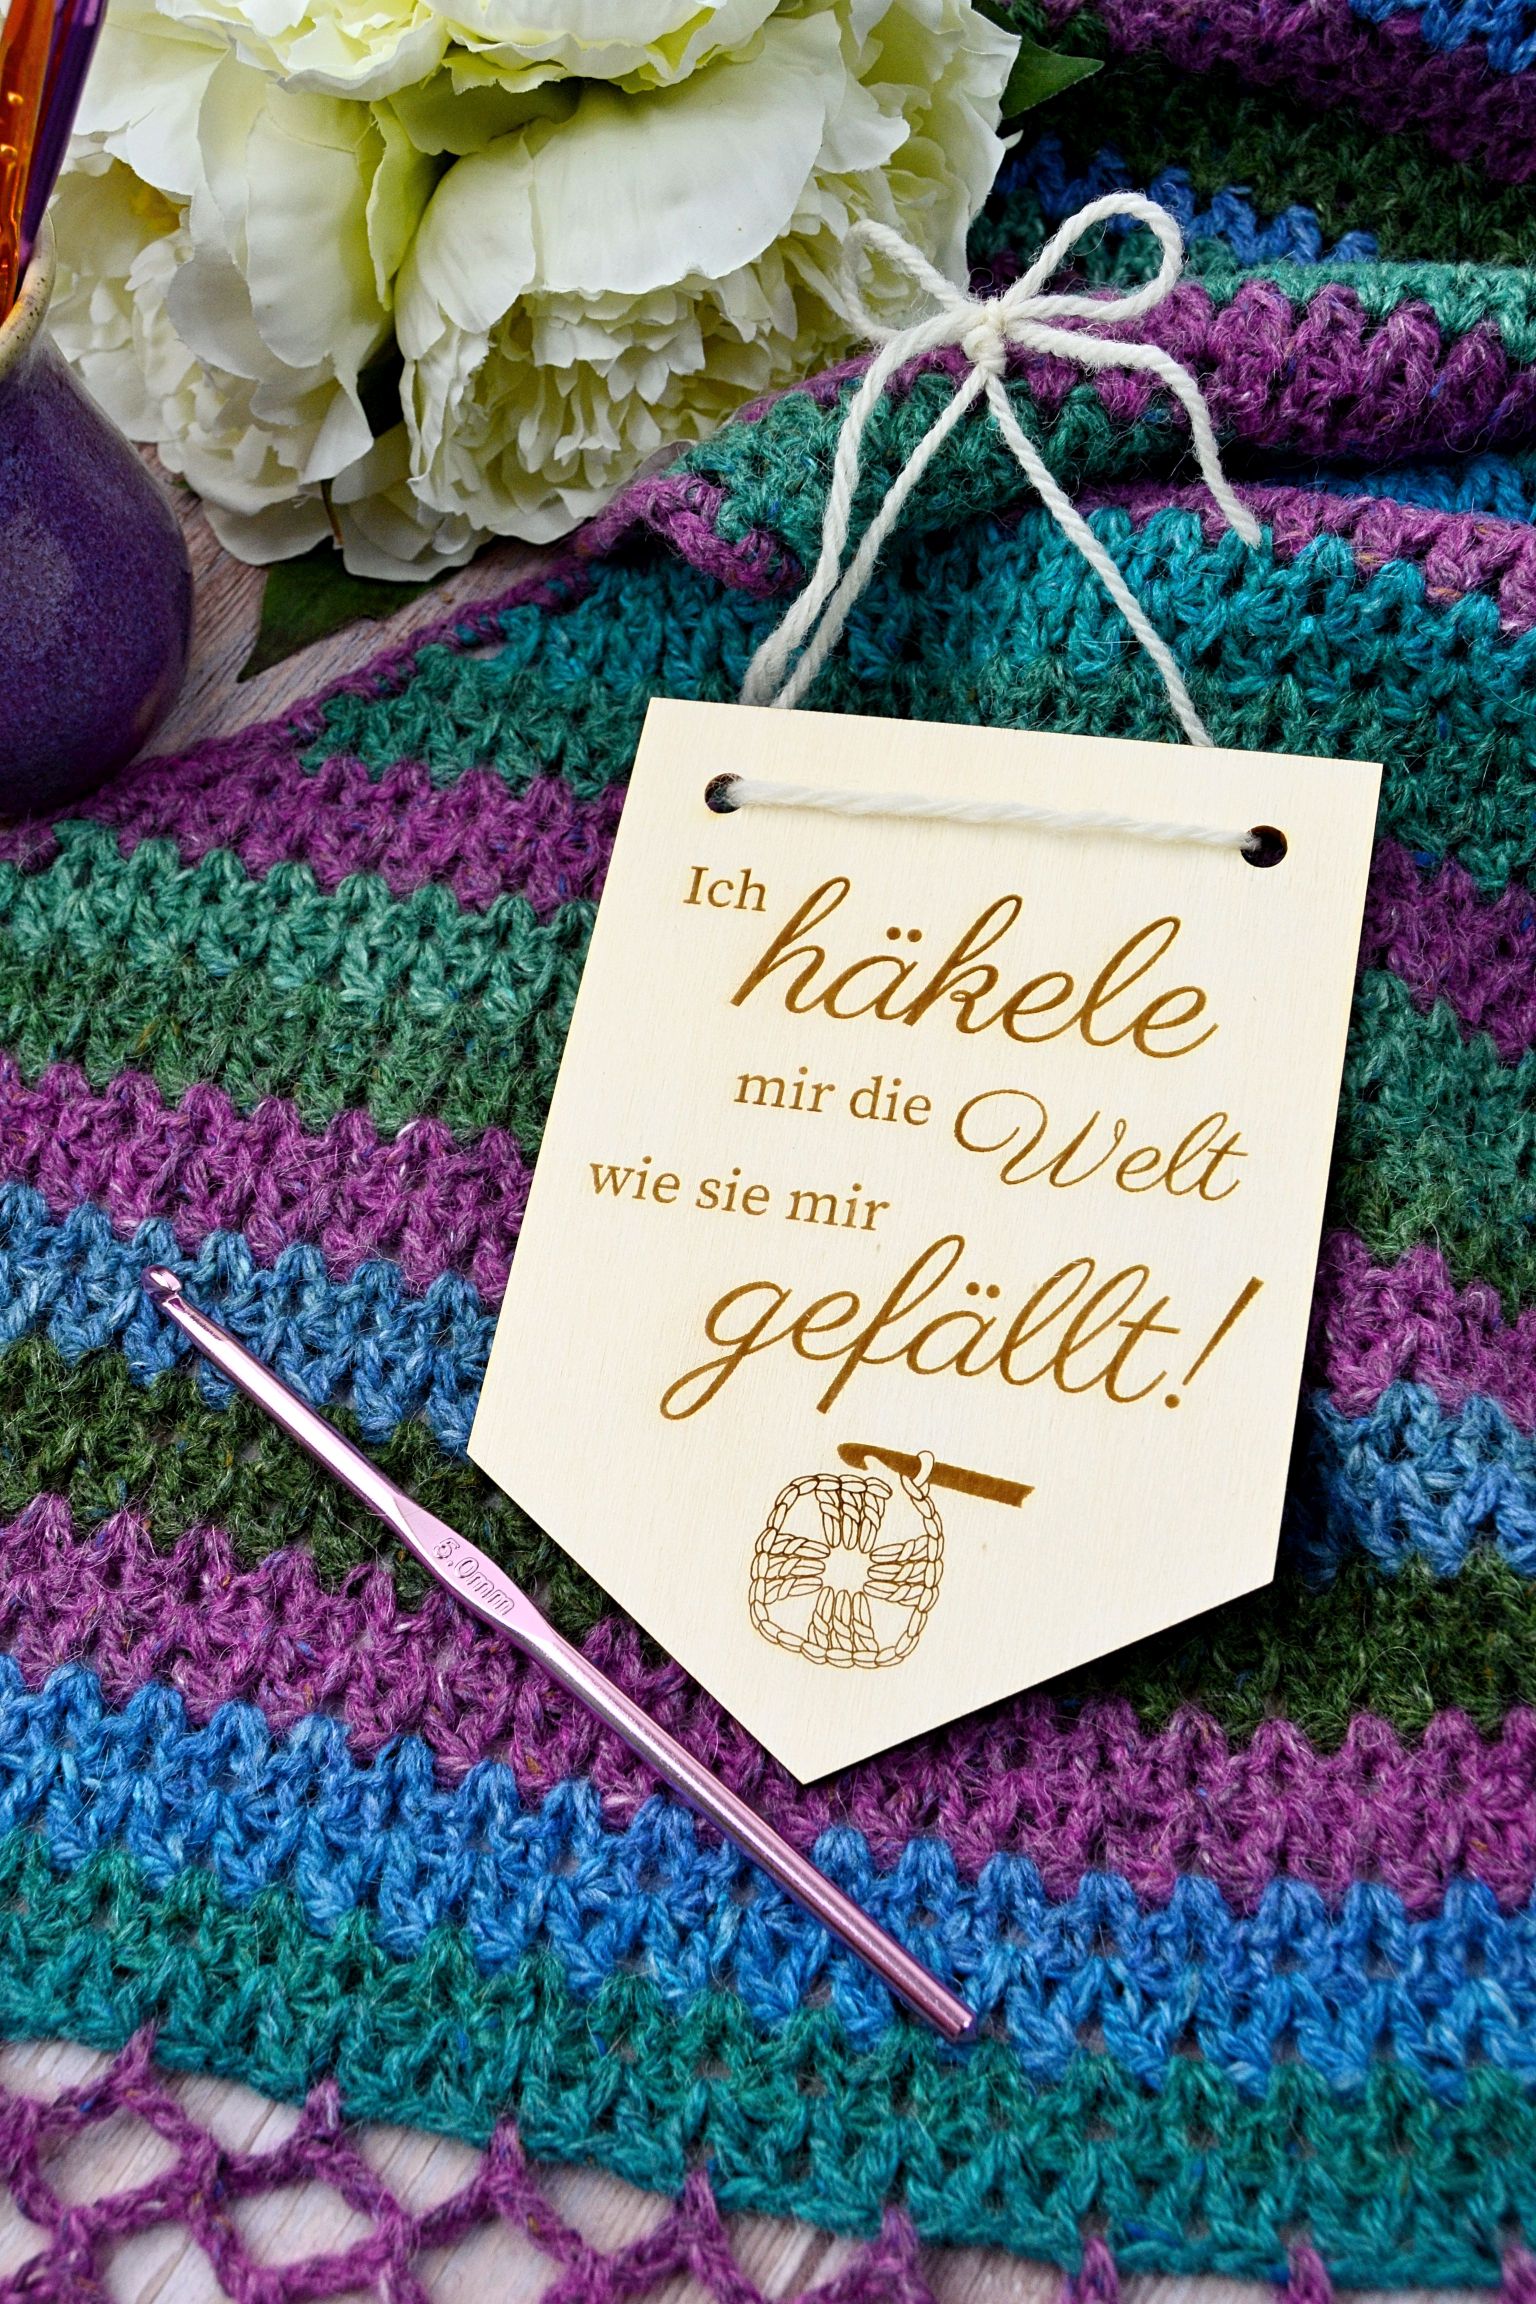 Wooden pennant "Ich häkele mir die Welt wie sie mir gefällt" on crochet shawl